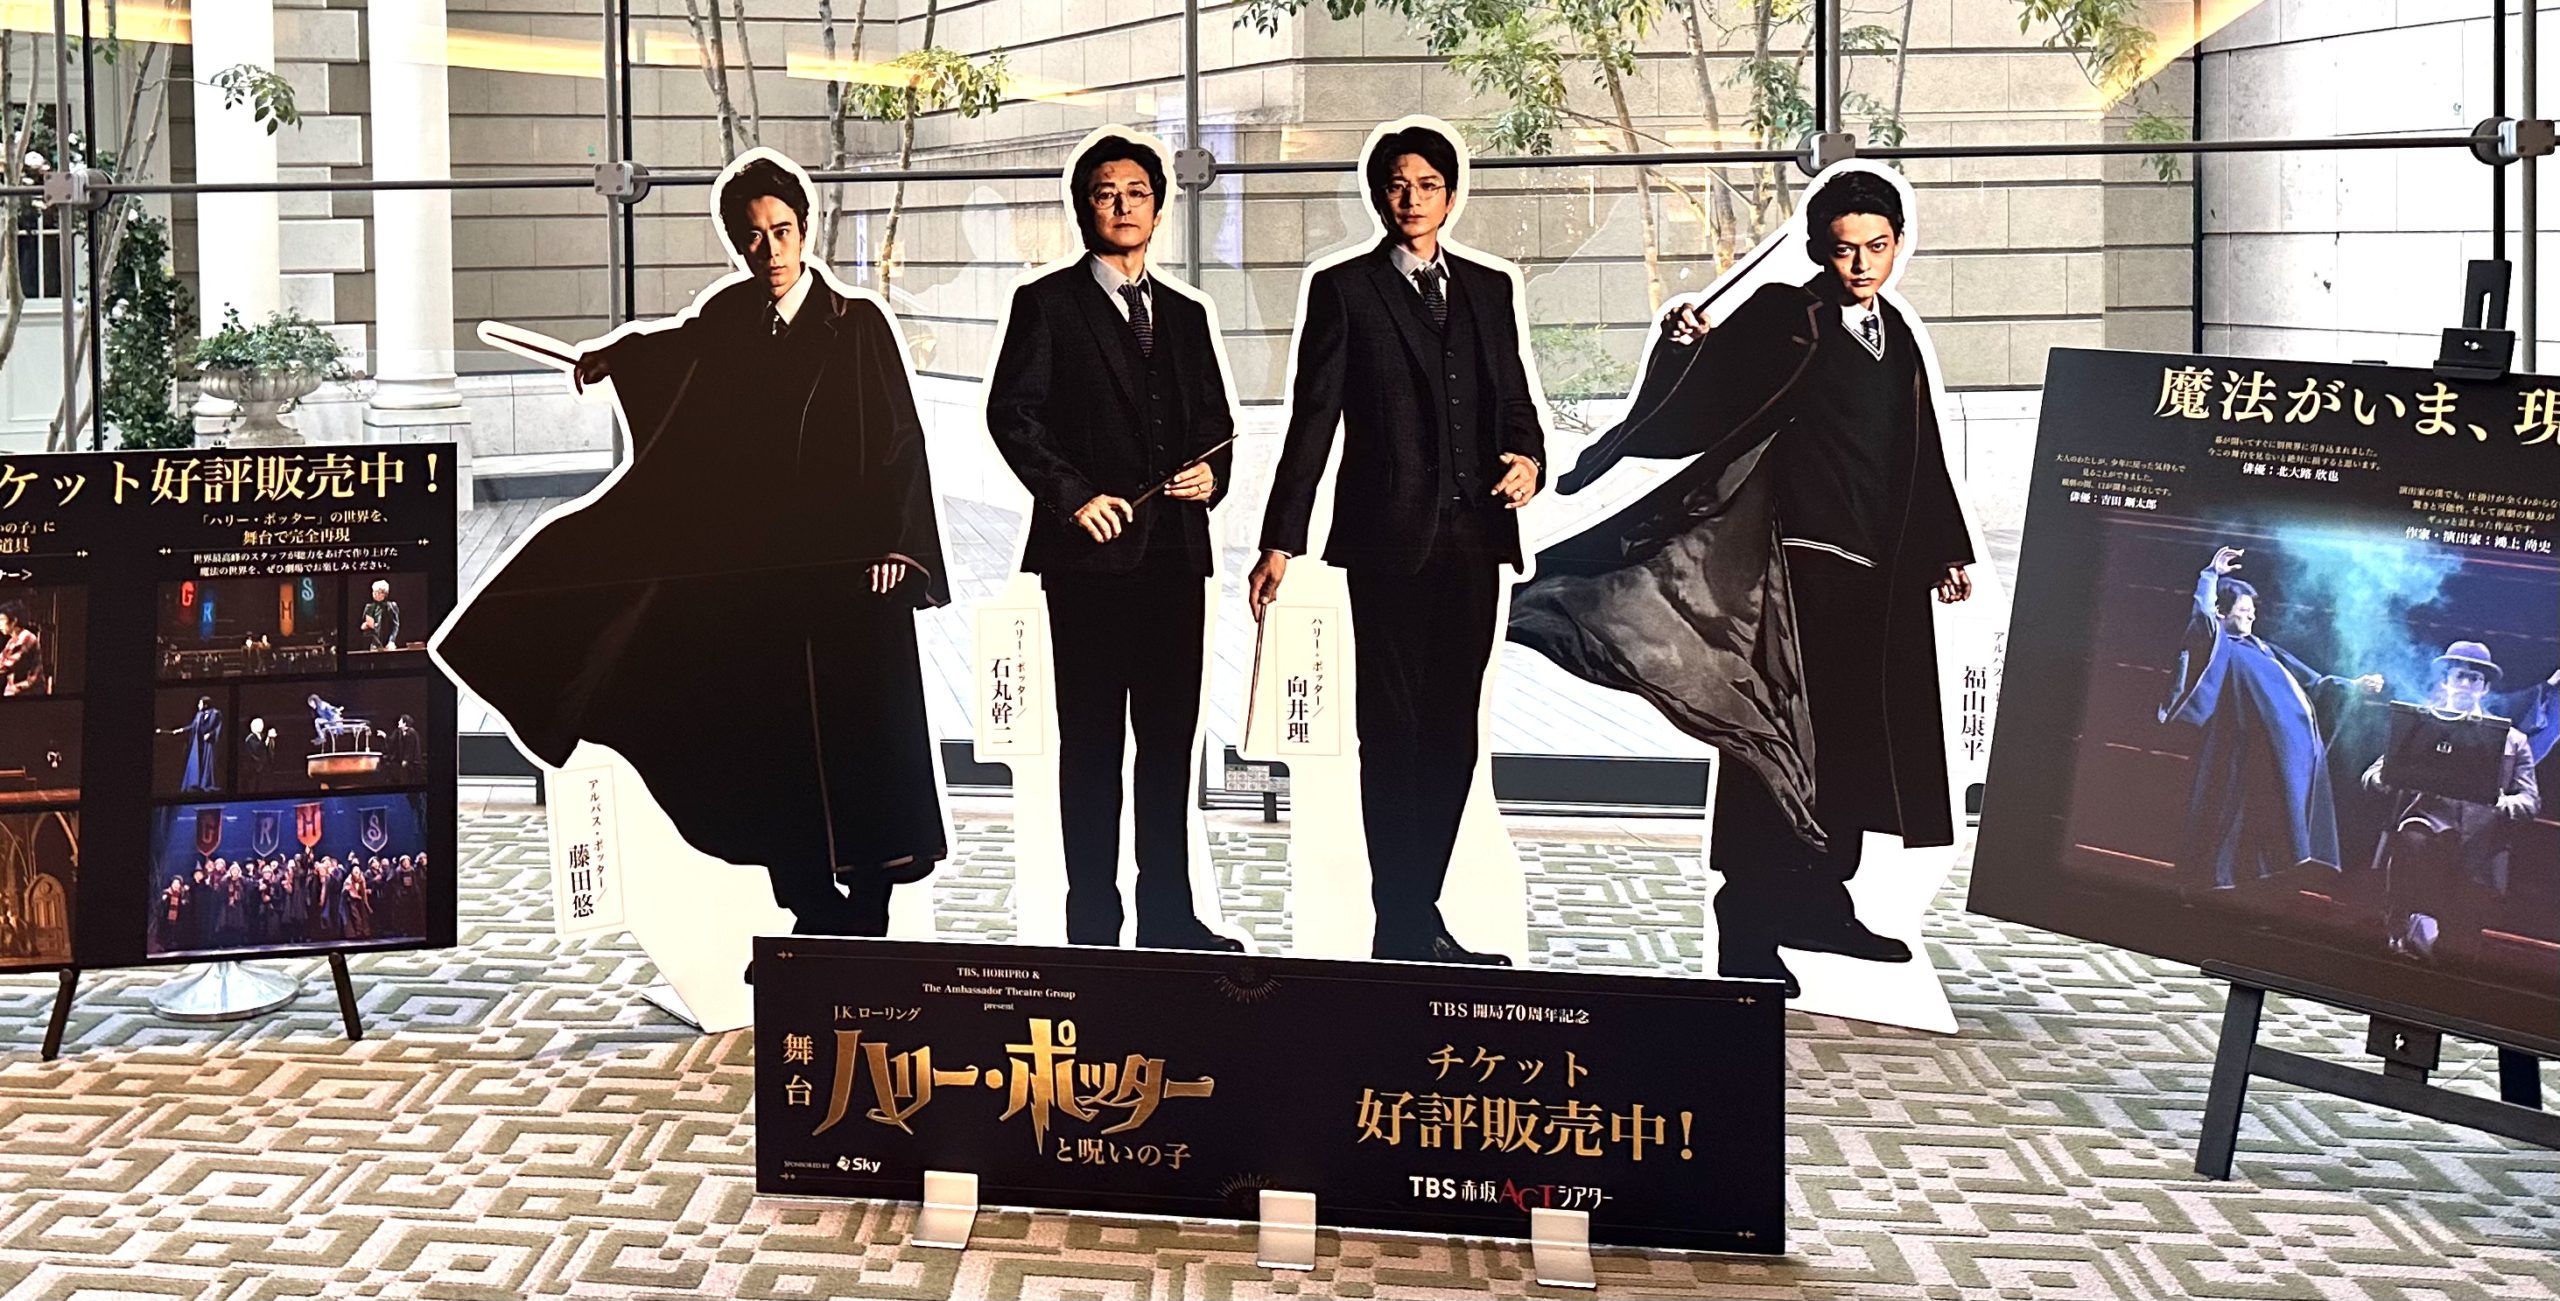 赤坂Bizタワー2Fで舞台『ハリー・ポッターと呪いの子』展示